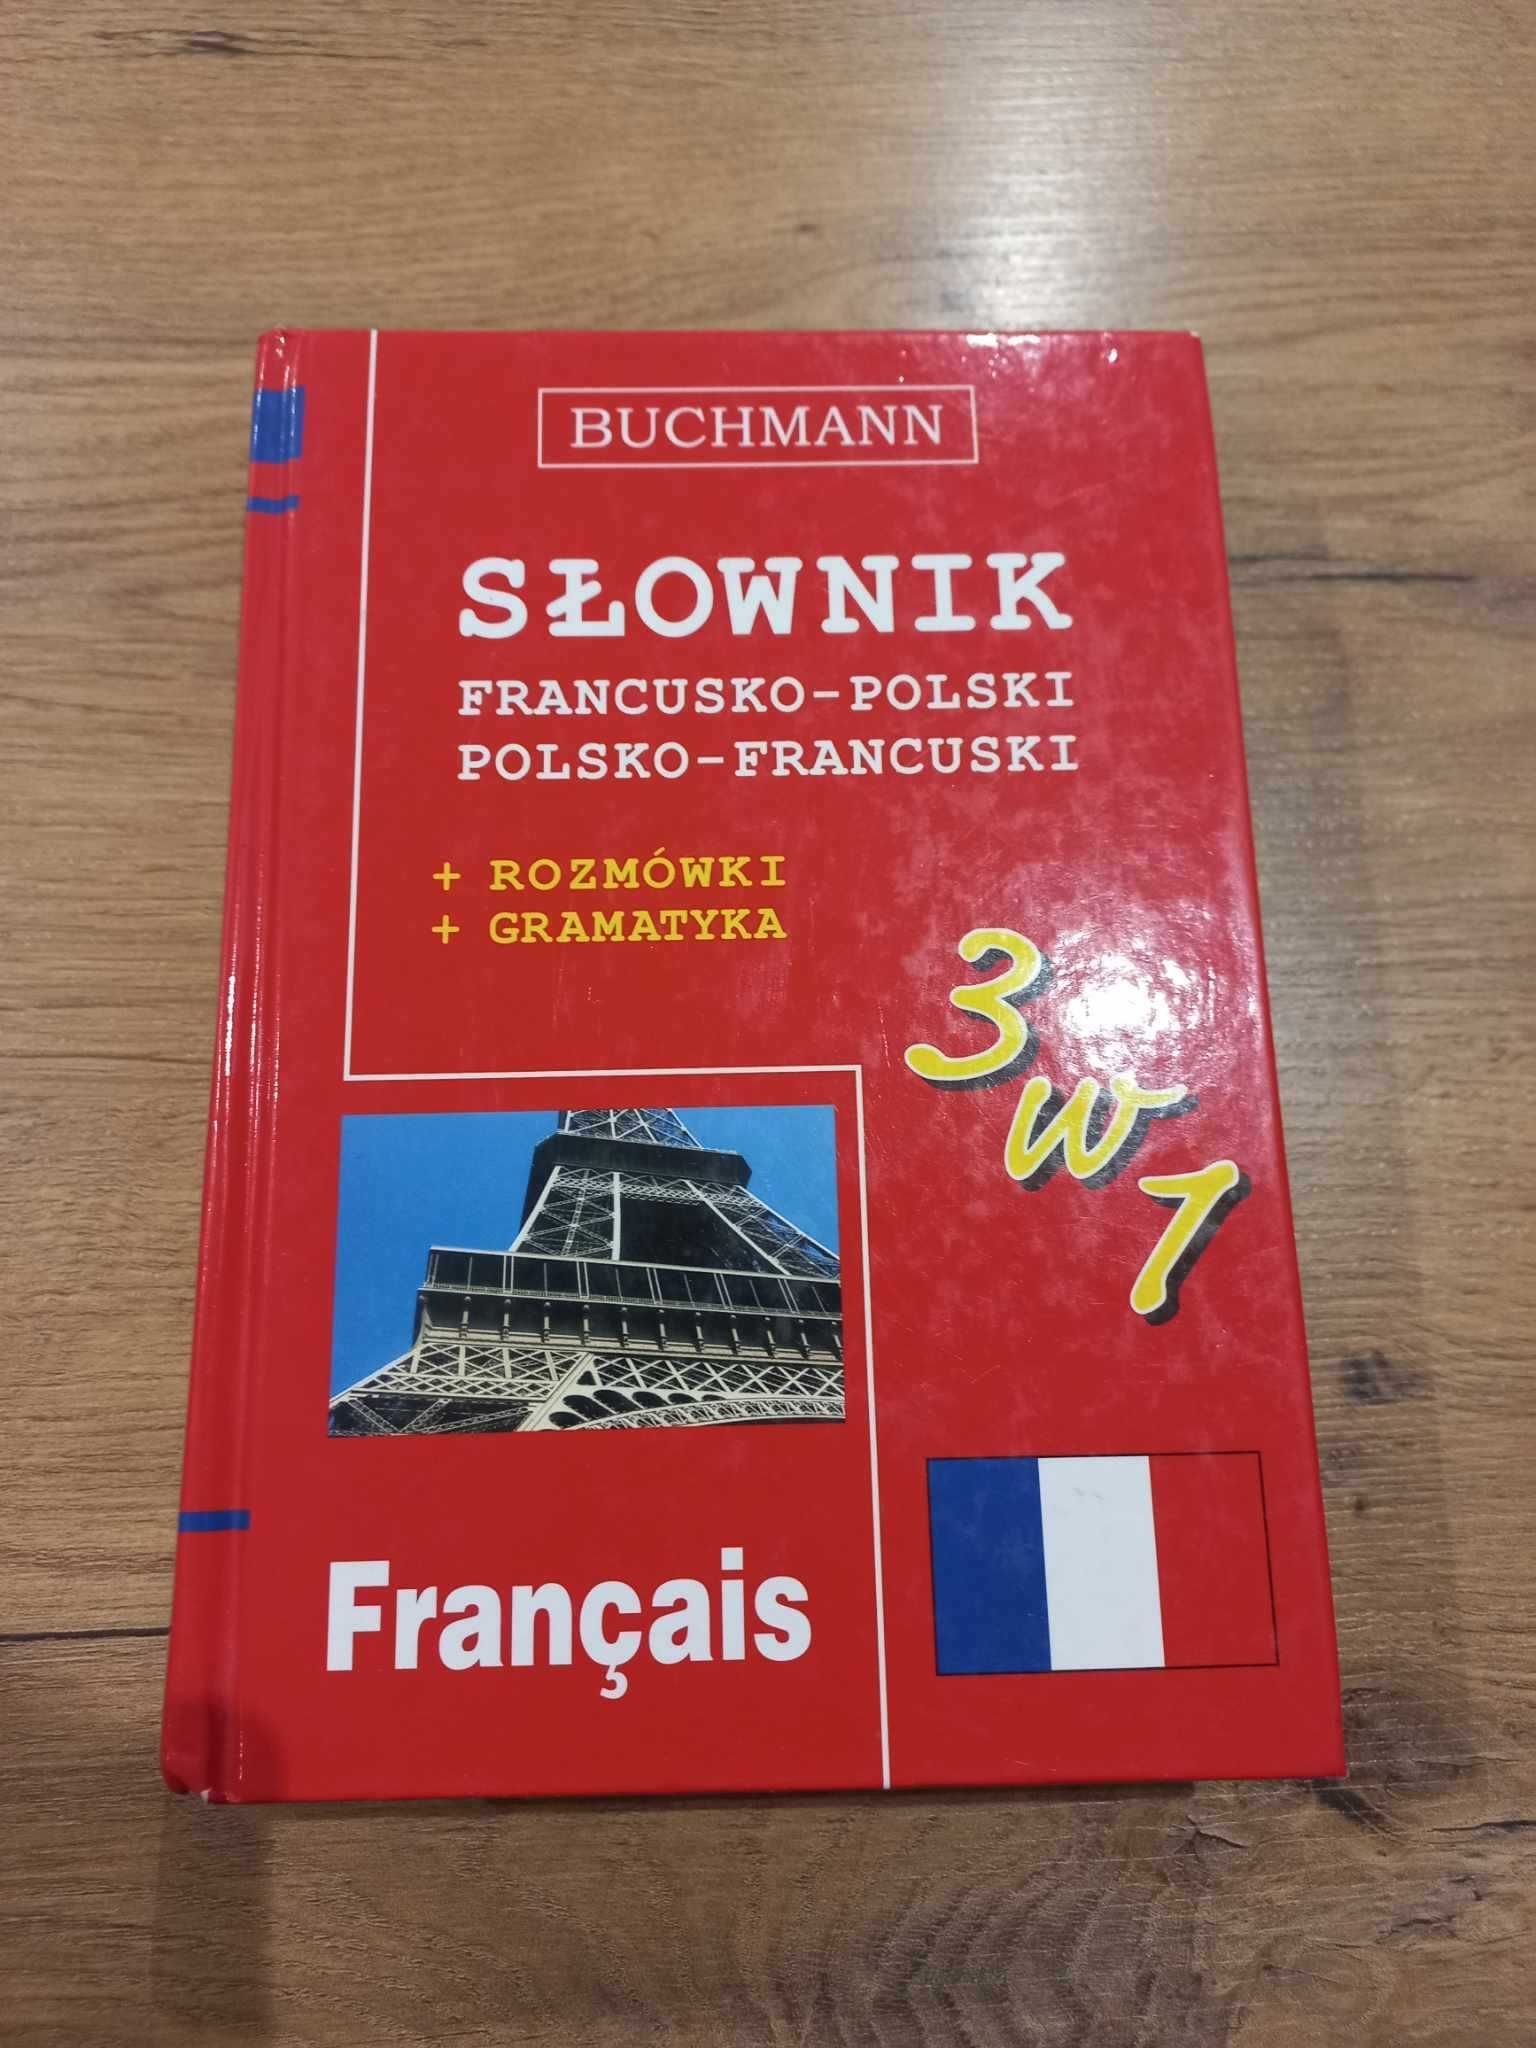 Słownik Francusko Polski Buchmann 3w1